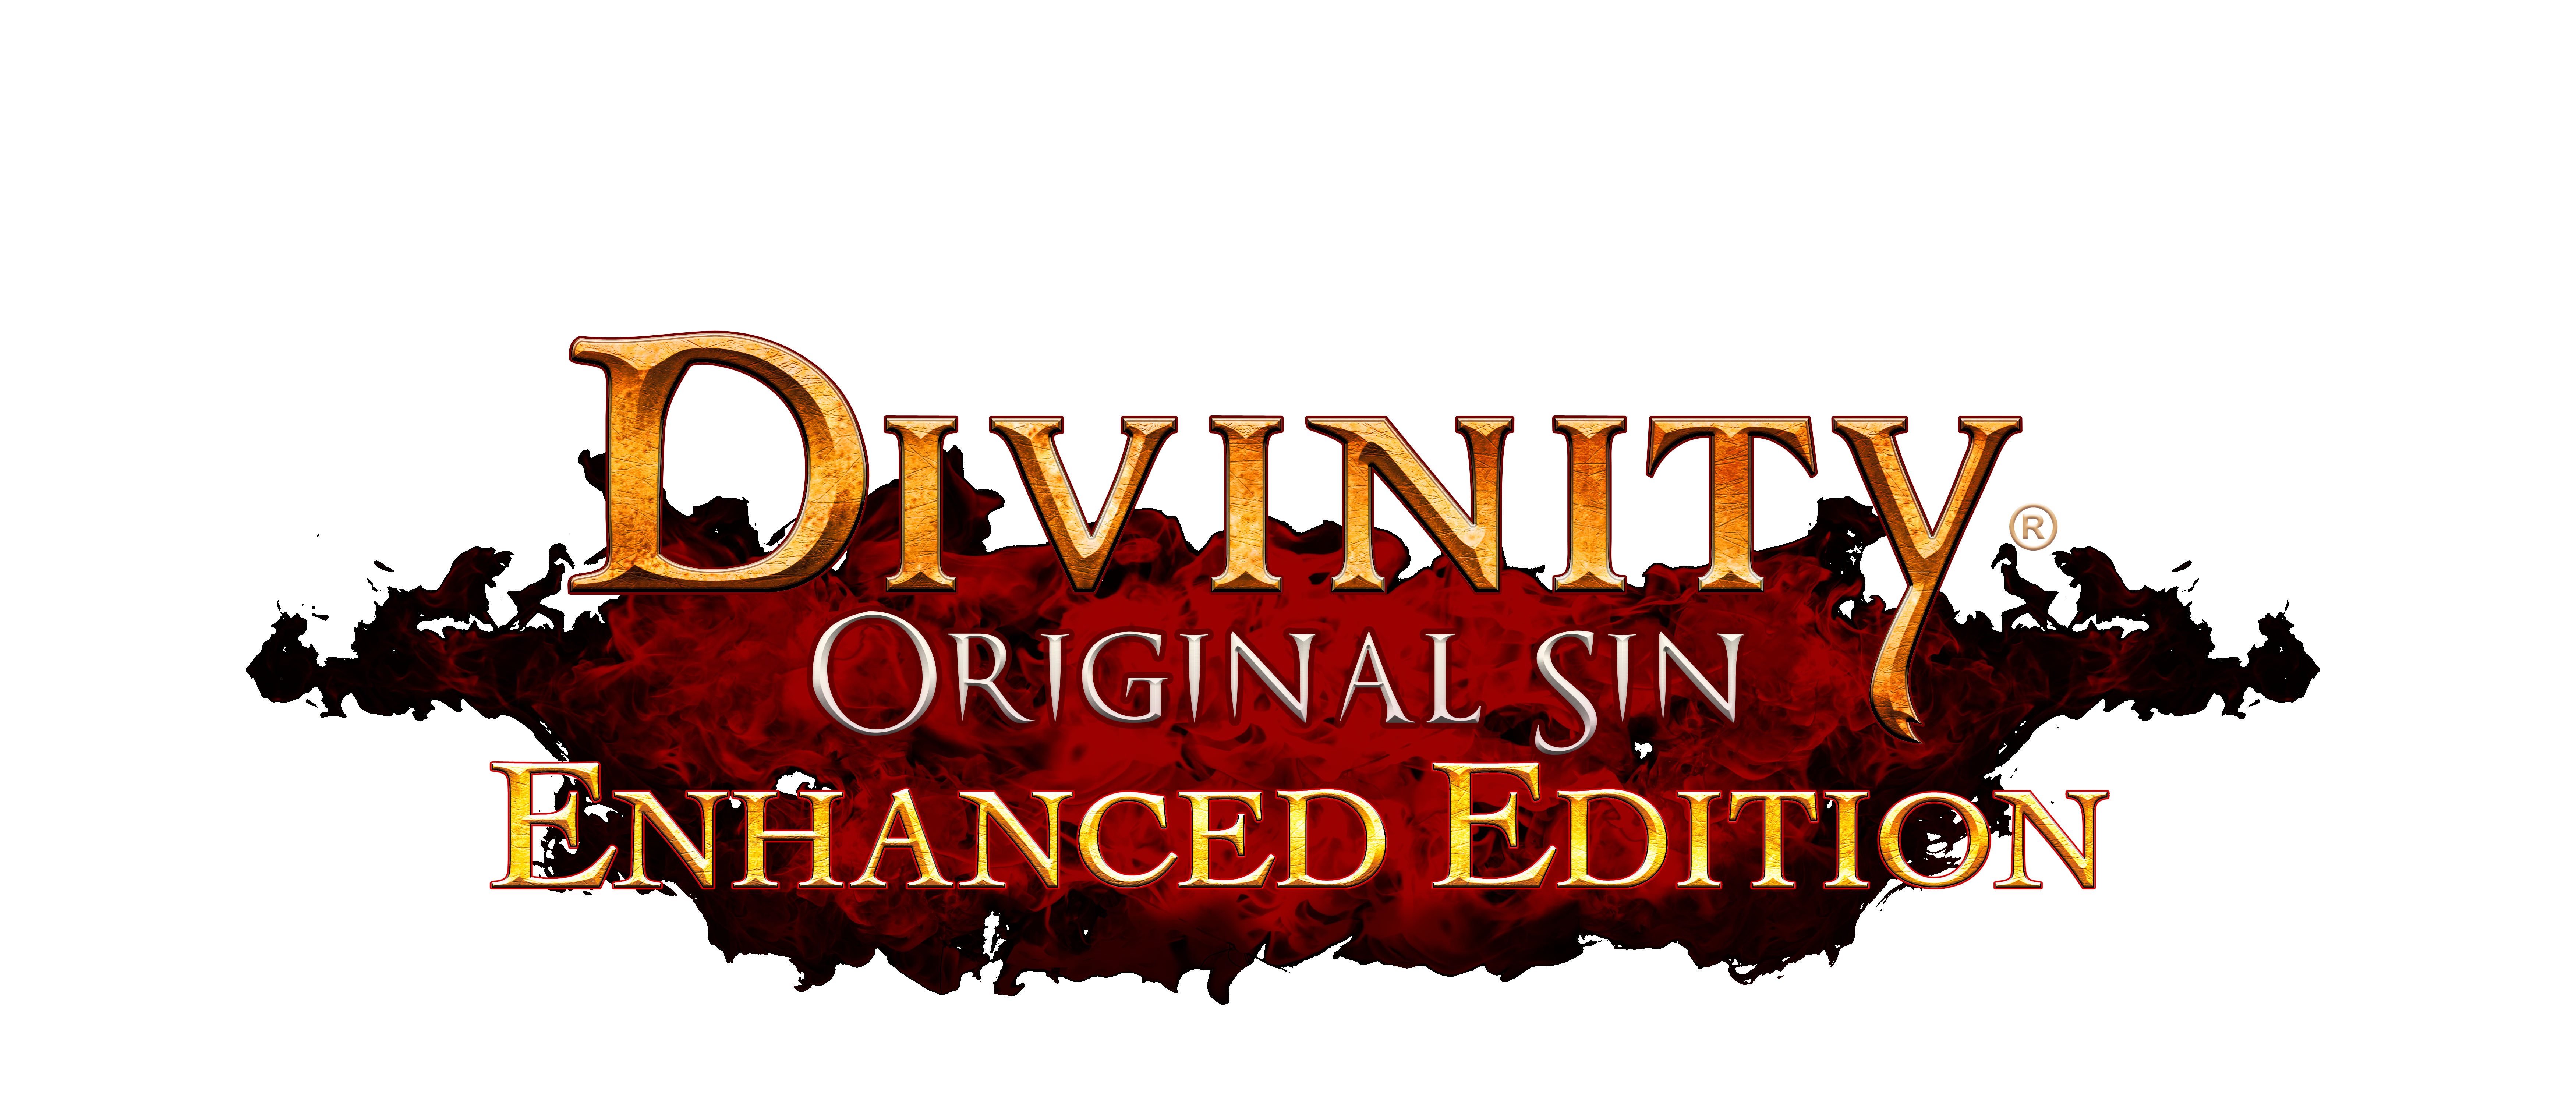 Download Divinity Original Si